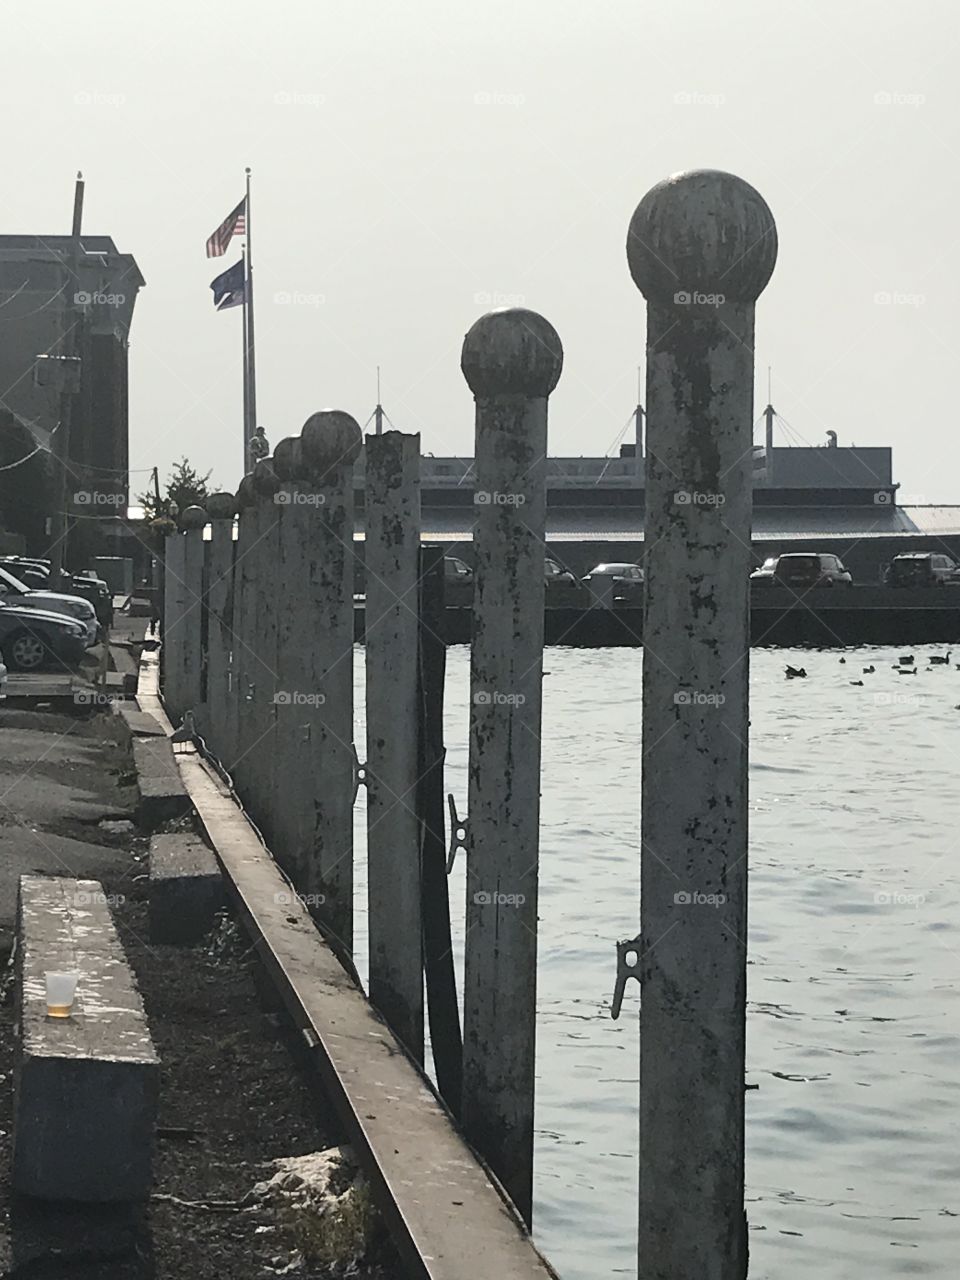 Erie docks